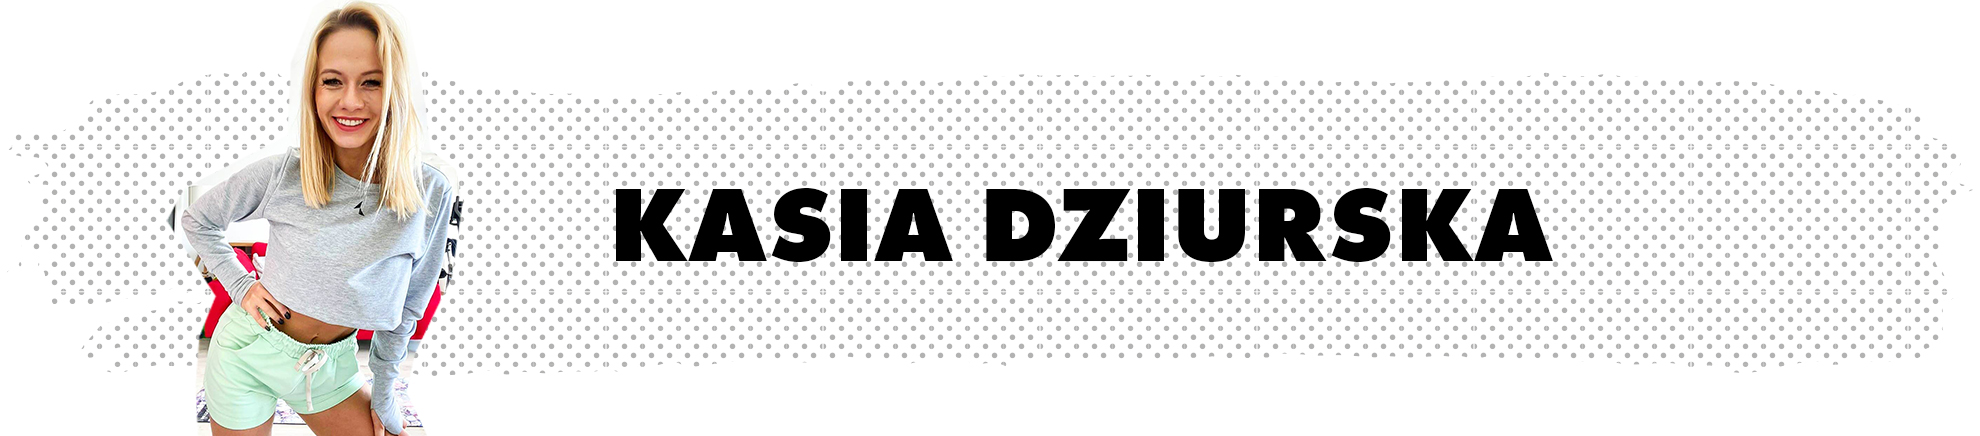 Kasia Dziurka - Carpatree brand ambassador